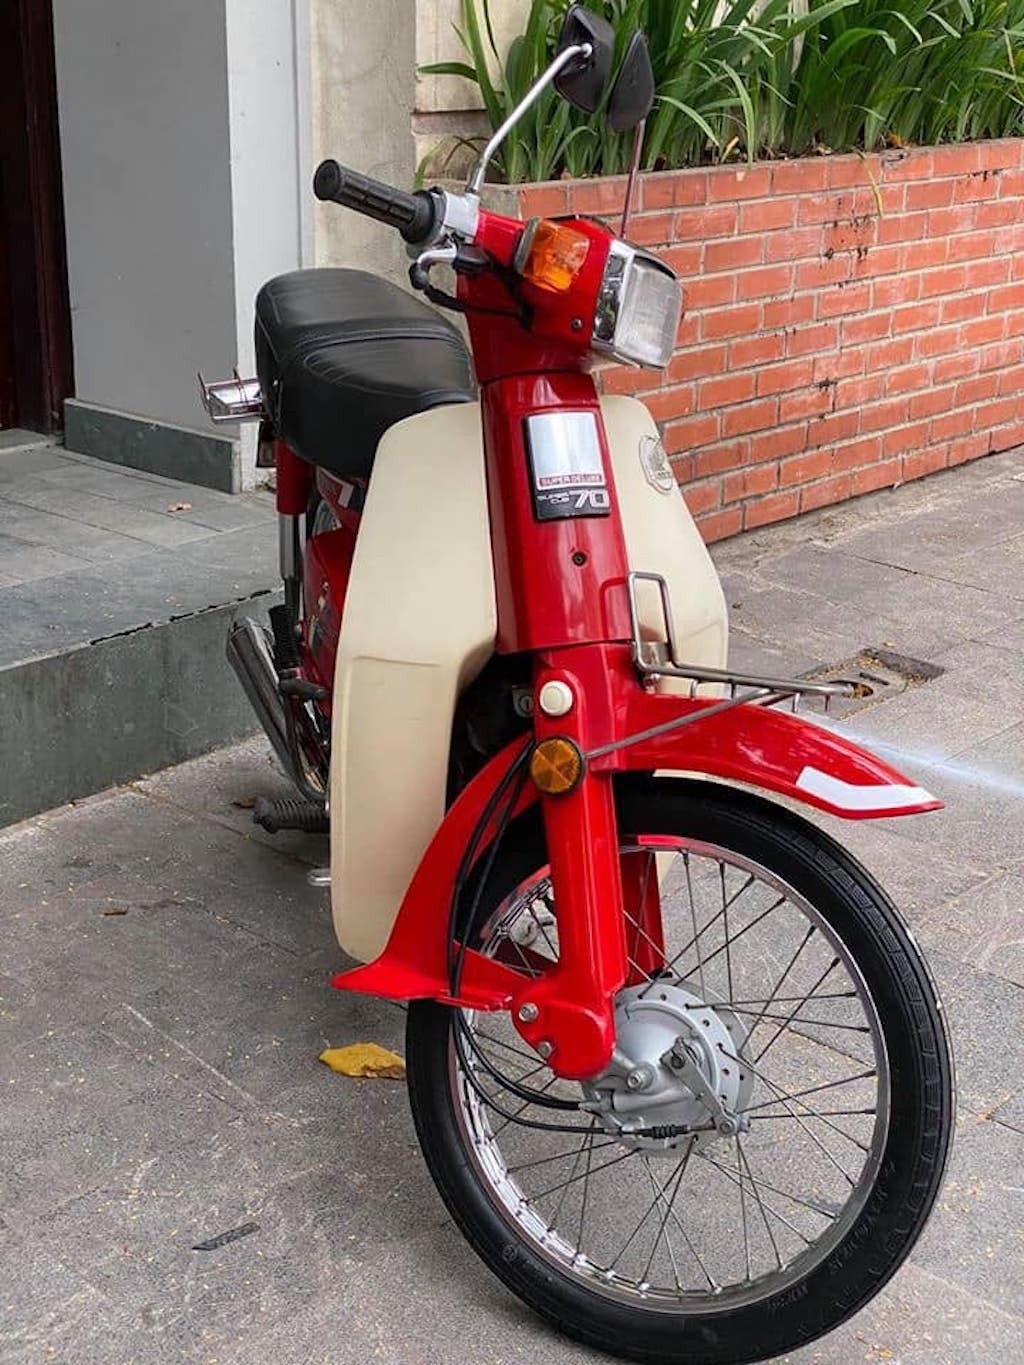 Honda Cub C50 nữ hoàng đỏ đời 1991 độc nhất Việt Nam  2banhvn